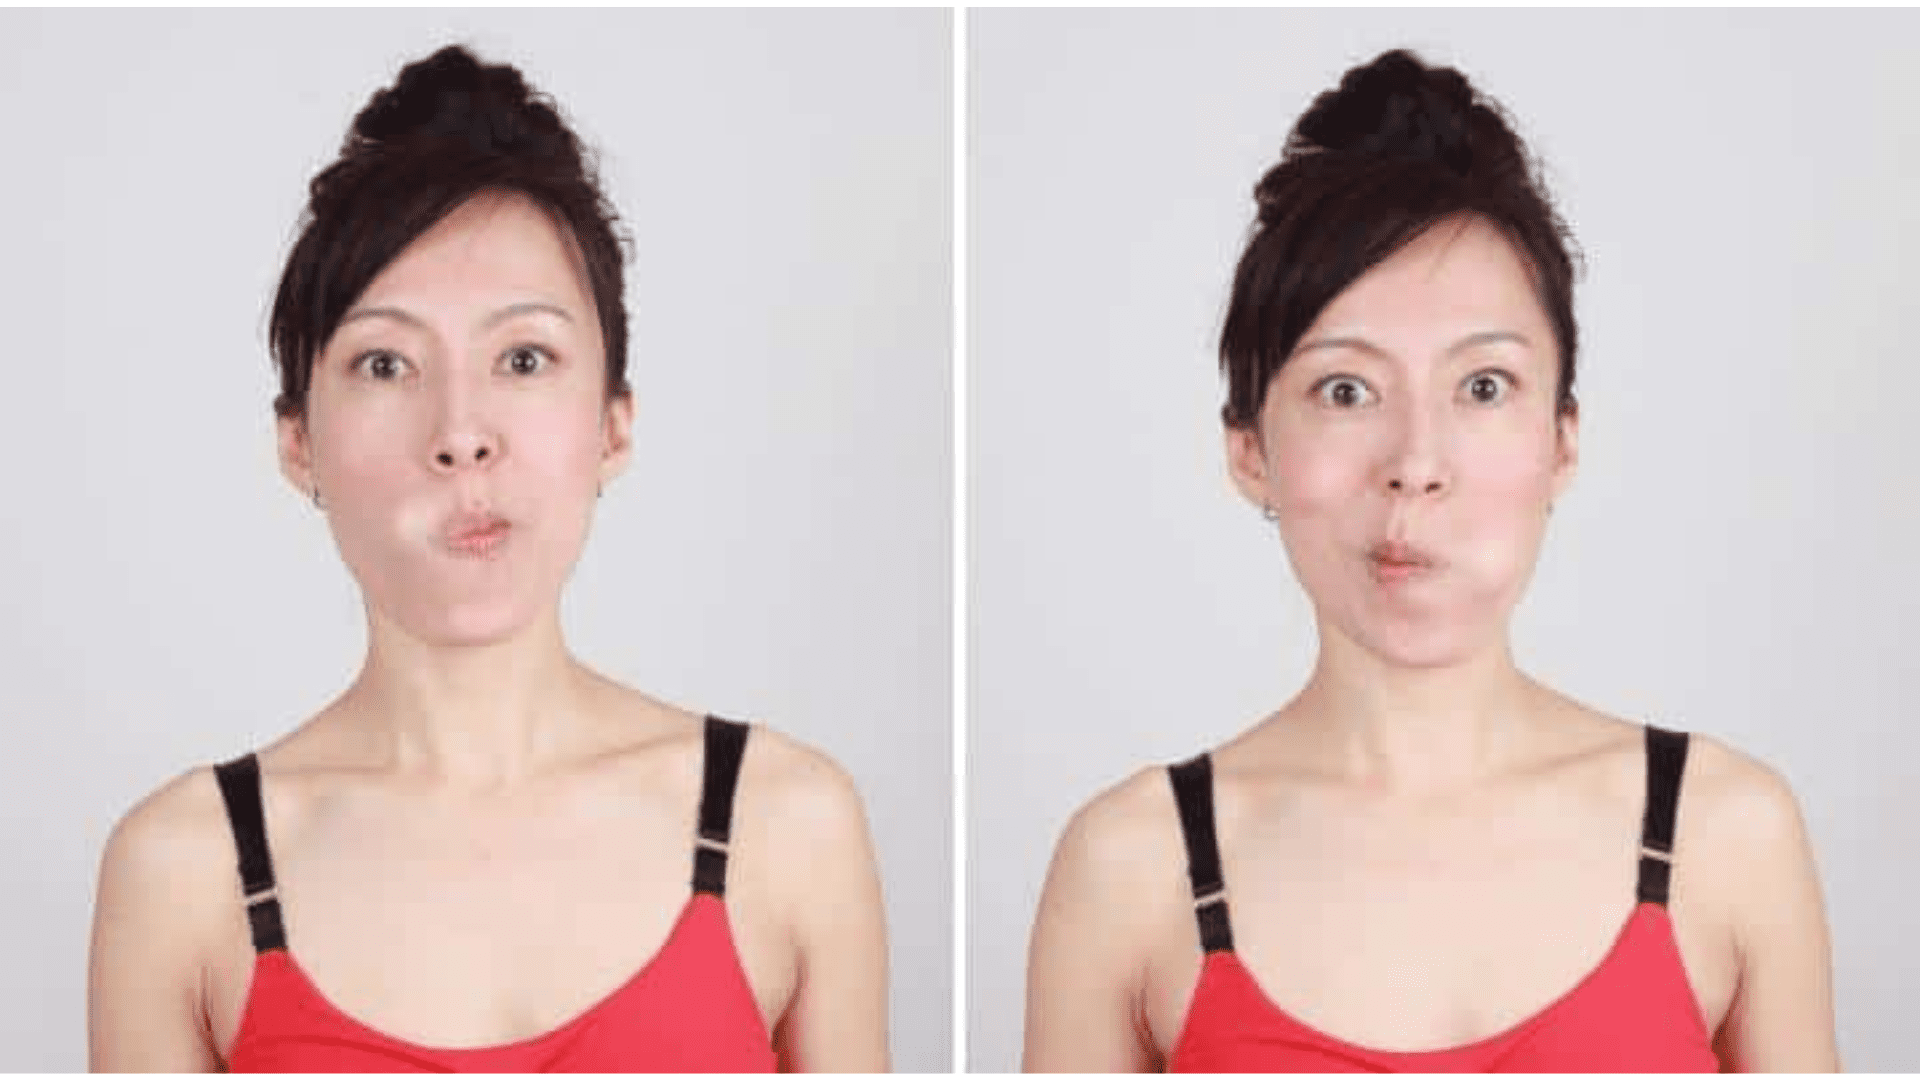 Mouthwash face exercise